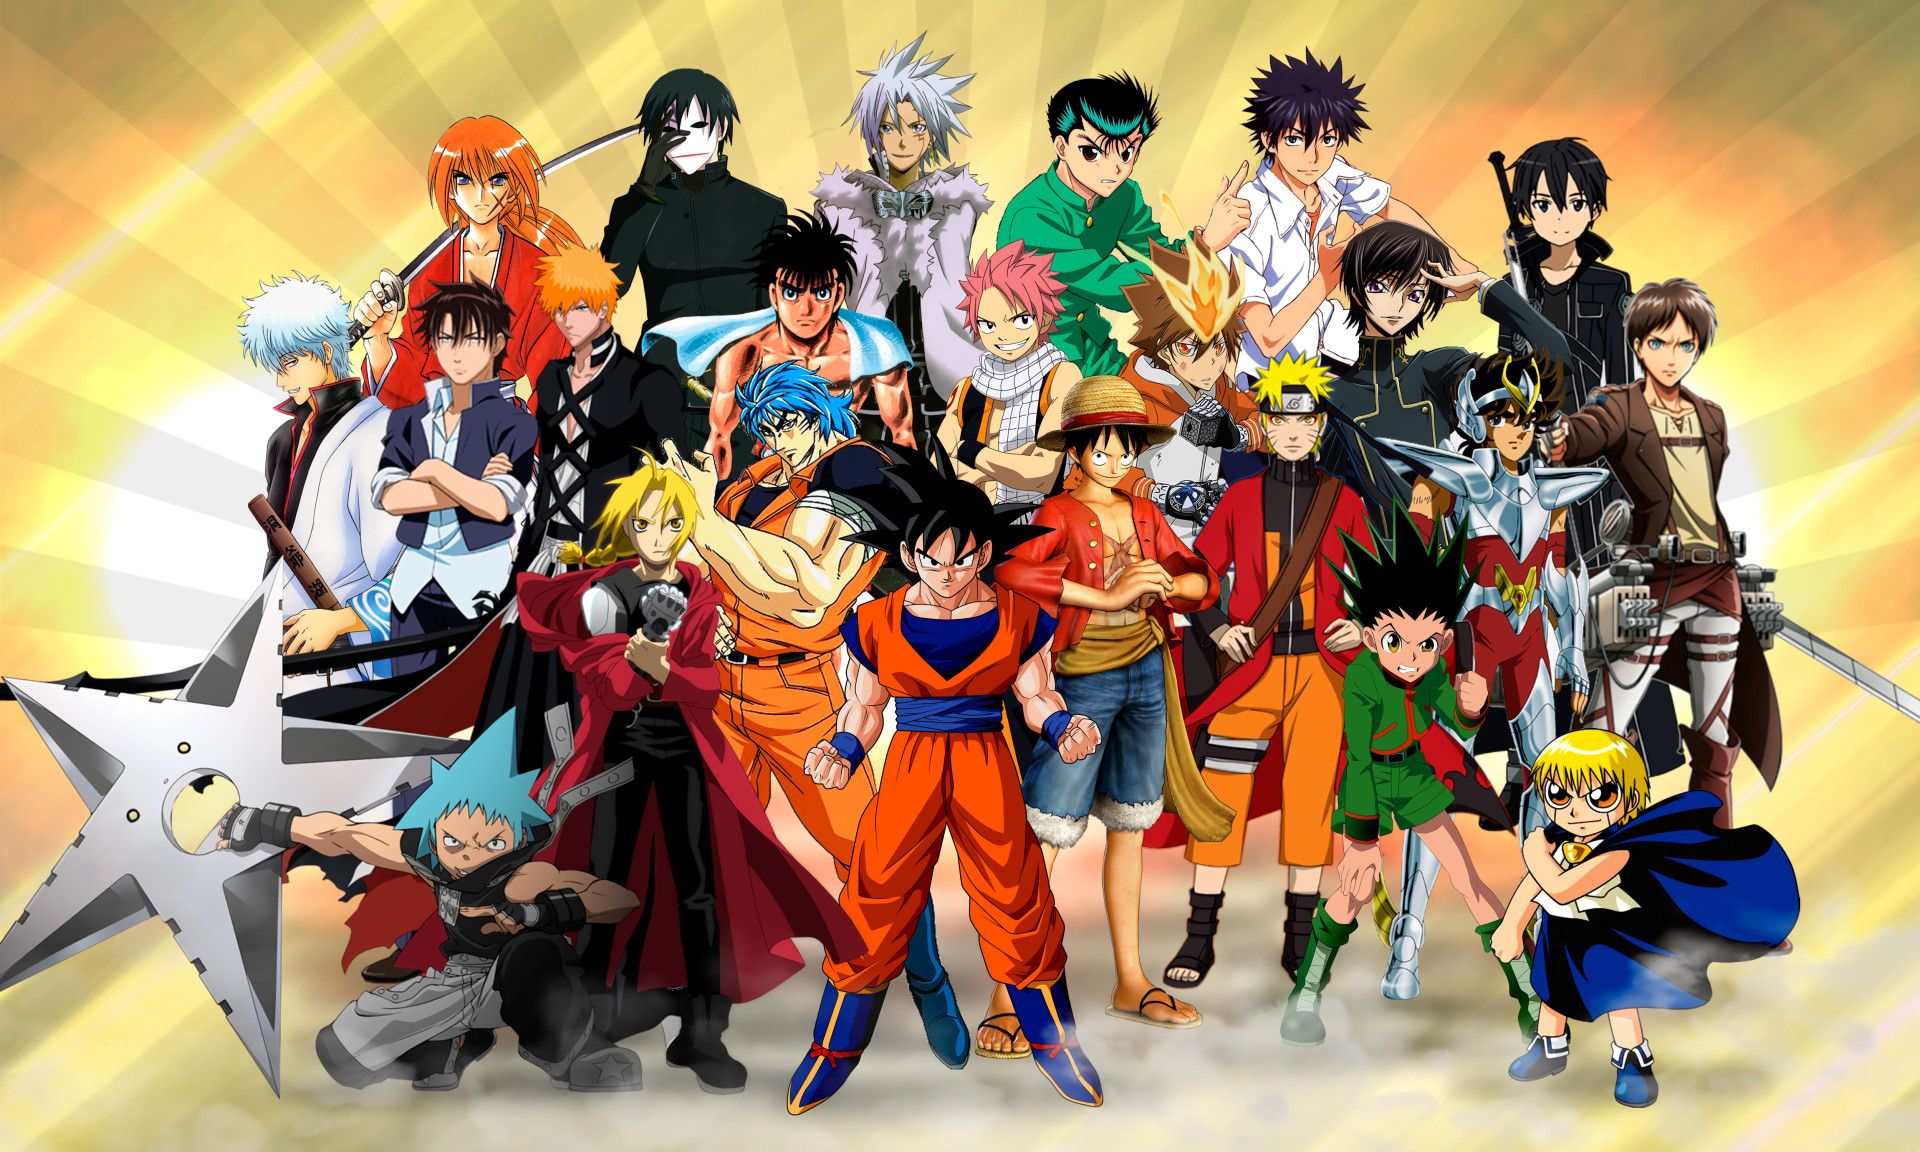 Naruto và Luffy là những nhân vật anime đặc biệt, với sự kết hợp của hai nhân vật này trong một bức hình nền bạn sẽ cảm nhận được sự đa dạng và phong phú của thế giới anime. Và đây cũng là một bộ sưu tập hình nền độc đáo cho những ai yêu thích anime.